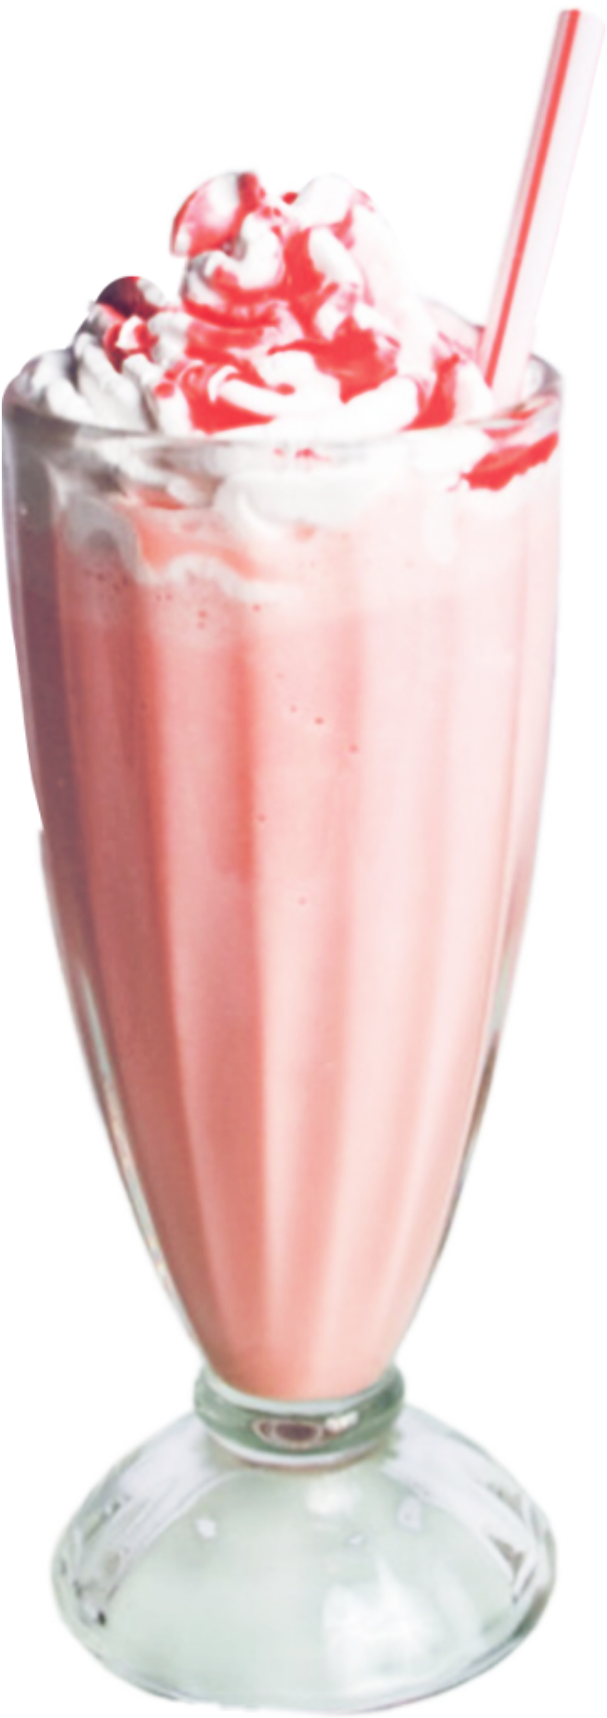 Strawberry Milkshake Delight.jpg PNG